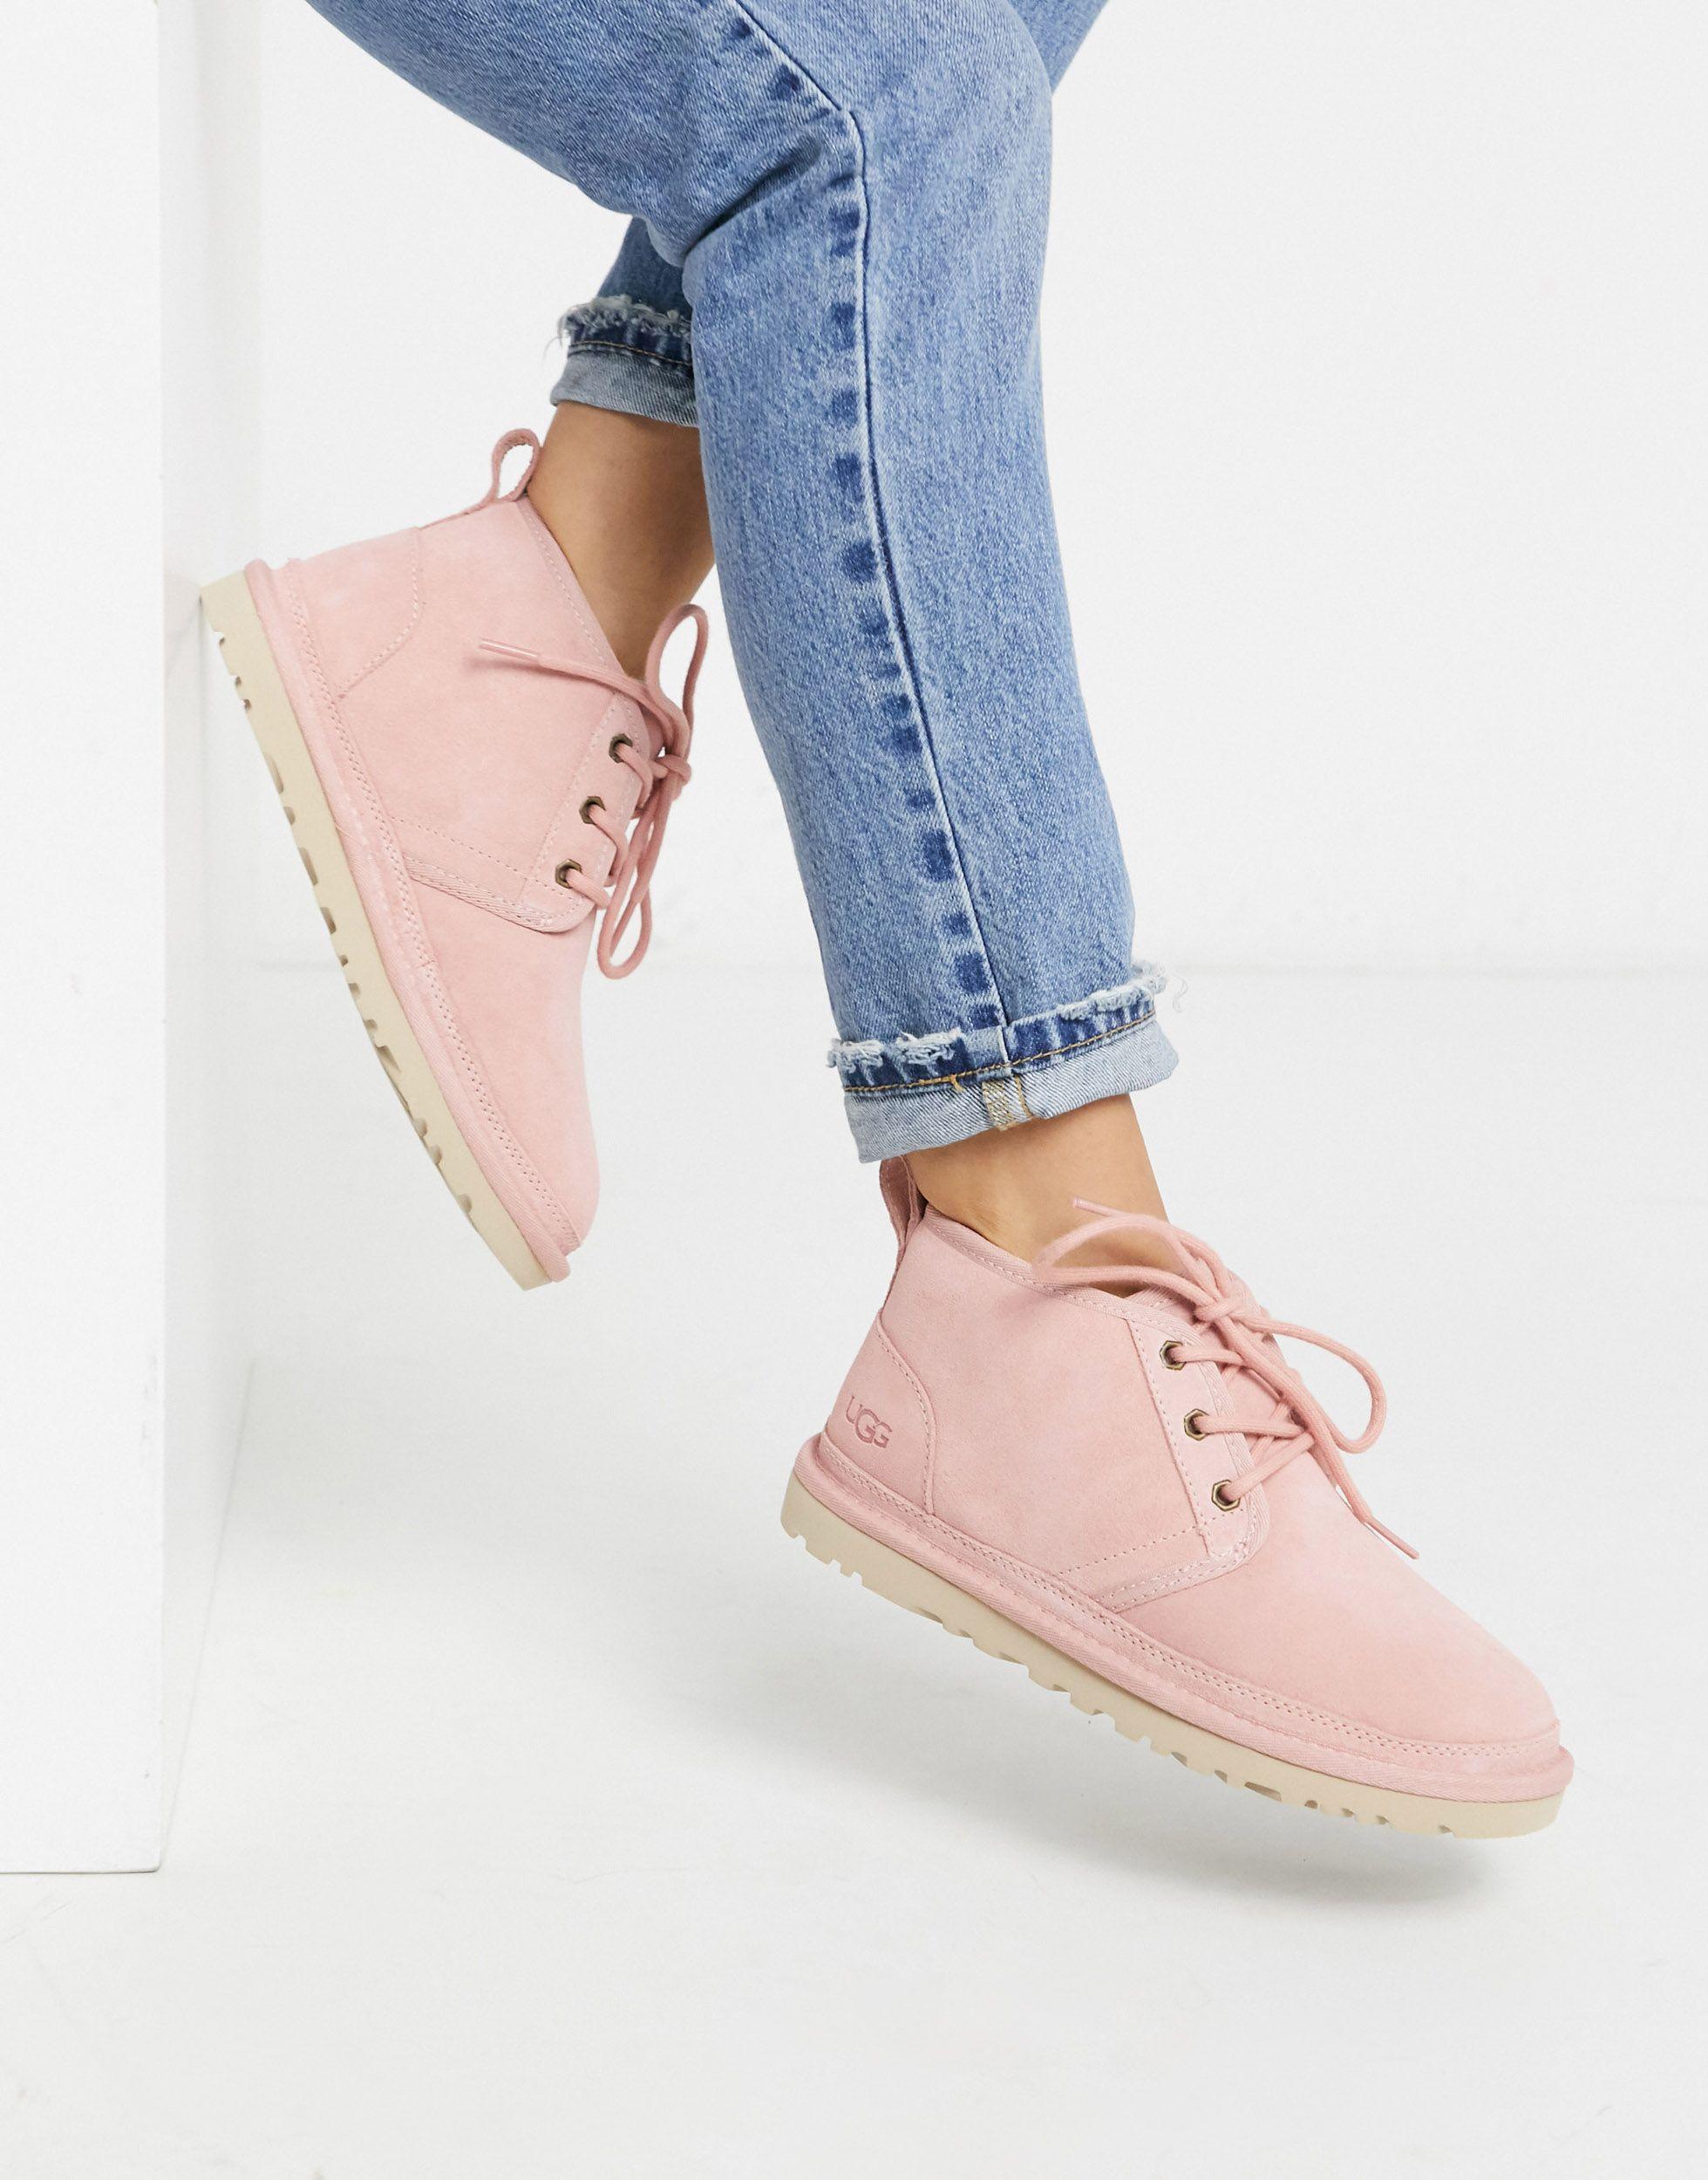 pink neumel ugg boots